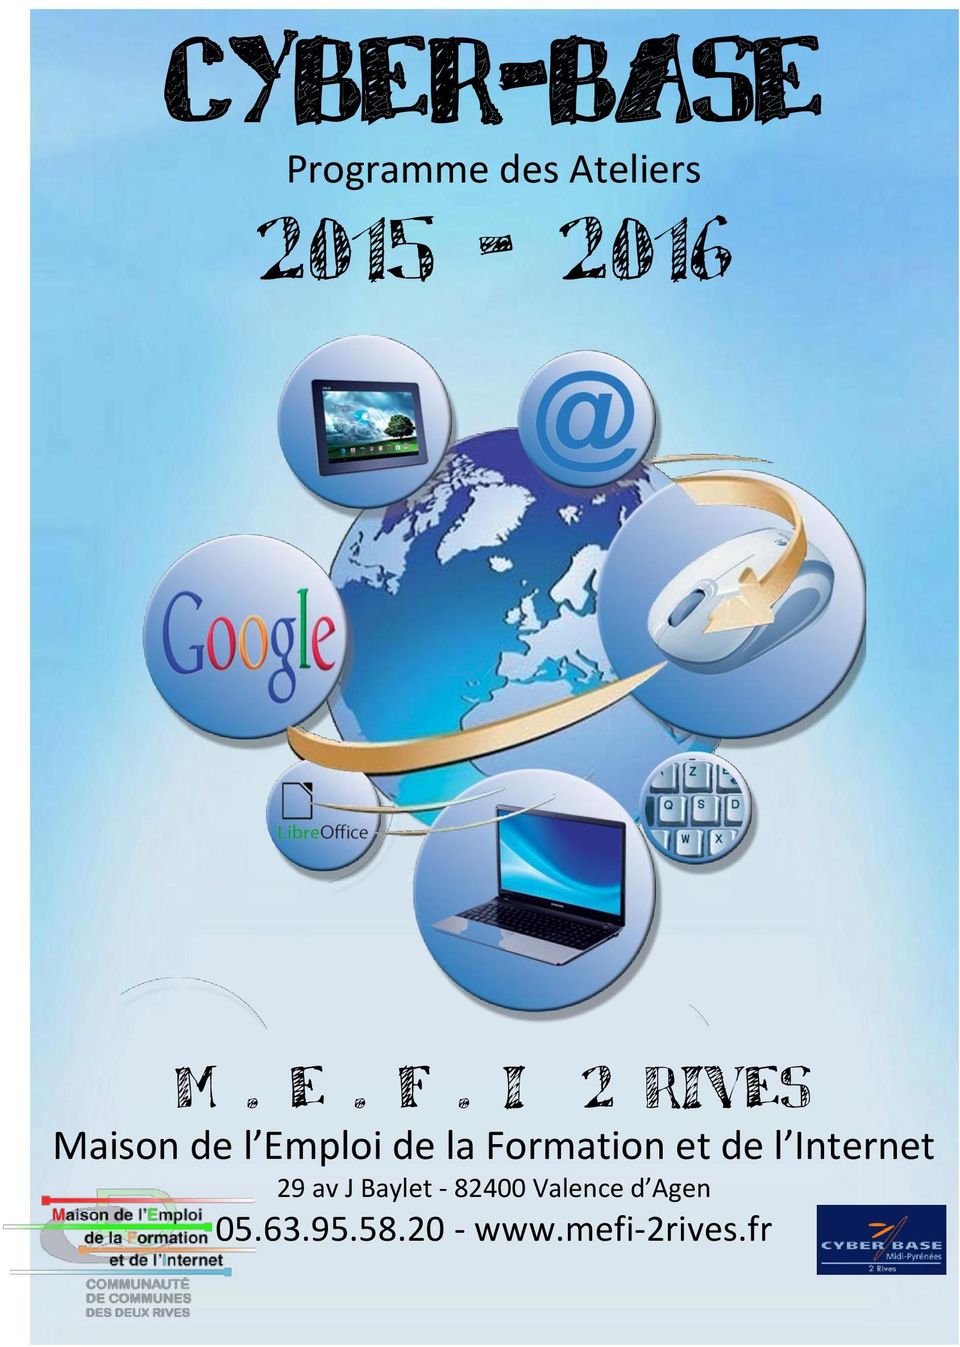 Formation et de l Internet 29 av J Baylet -